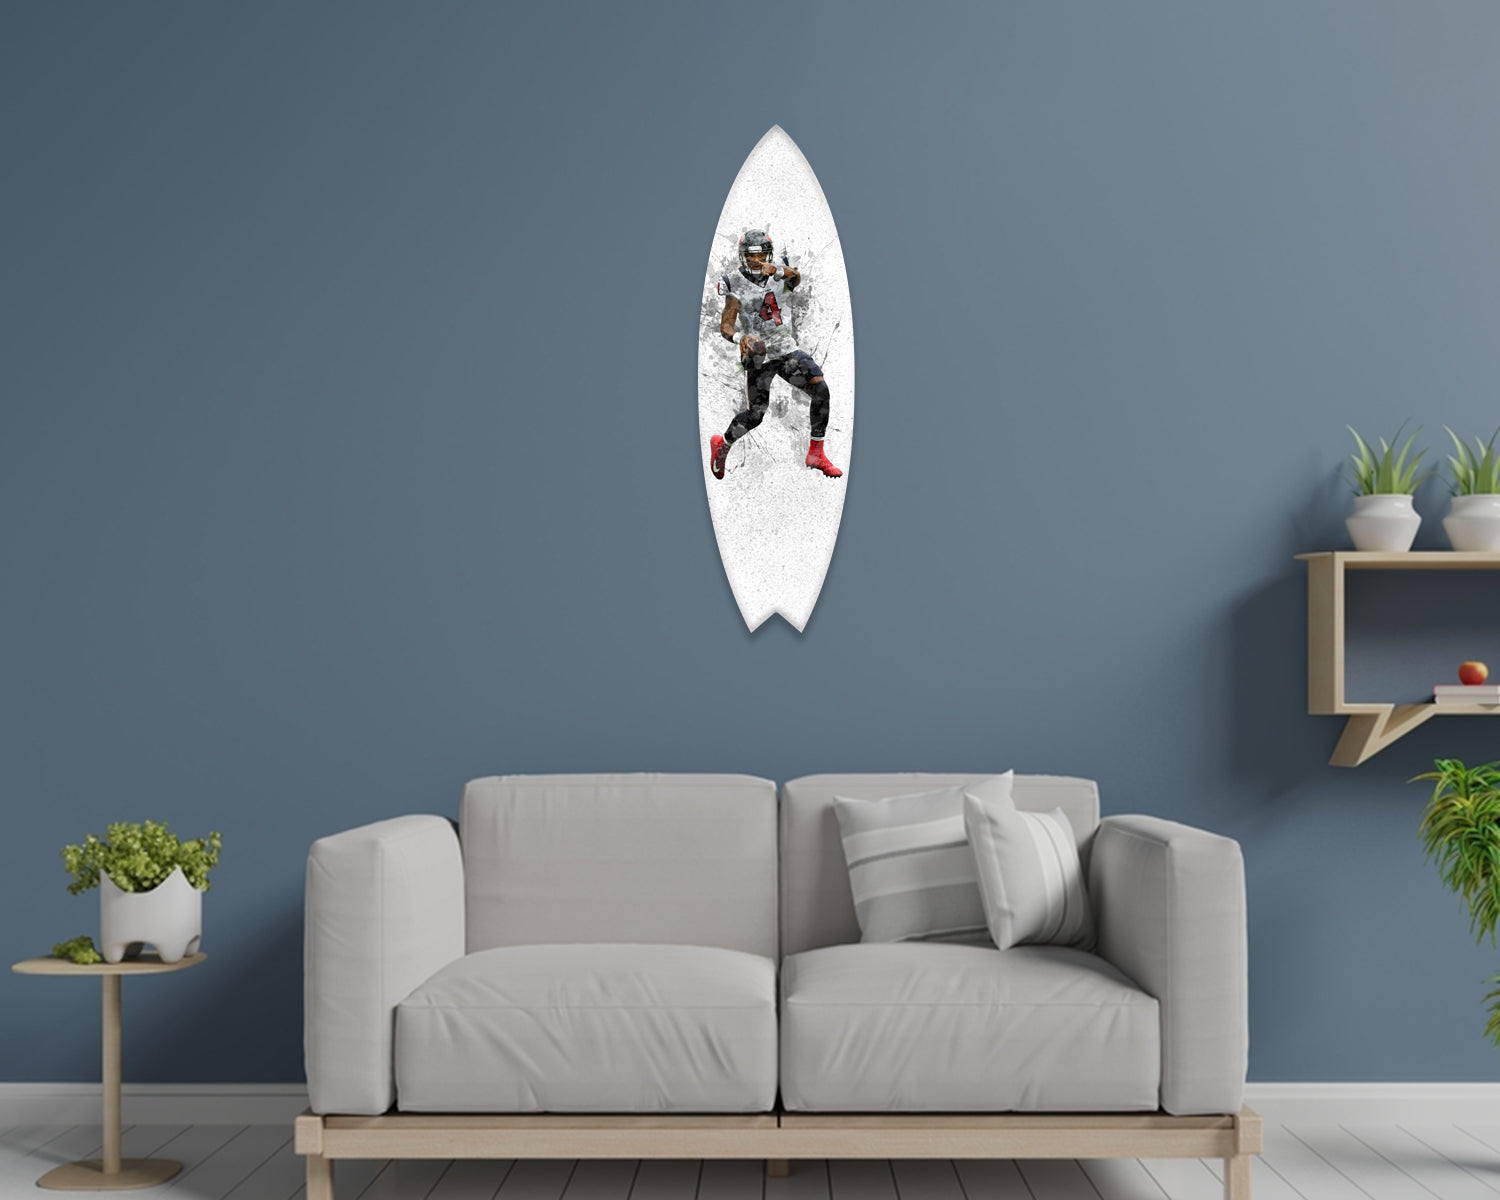 Deshaun Watson Acrylic Surfboard Wall Art 